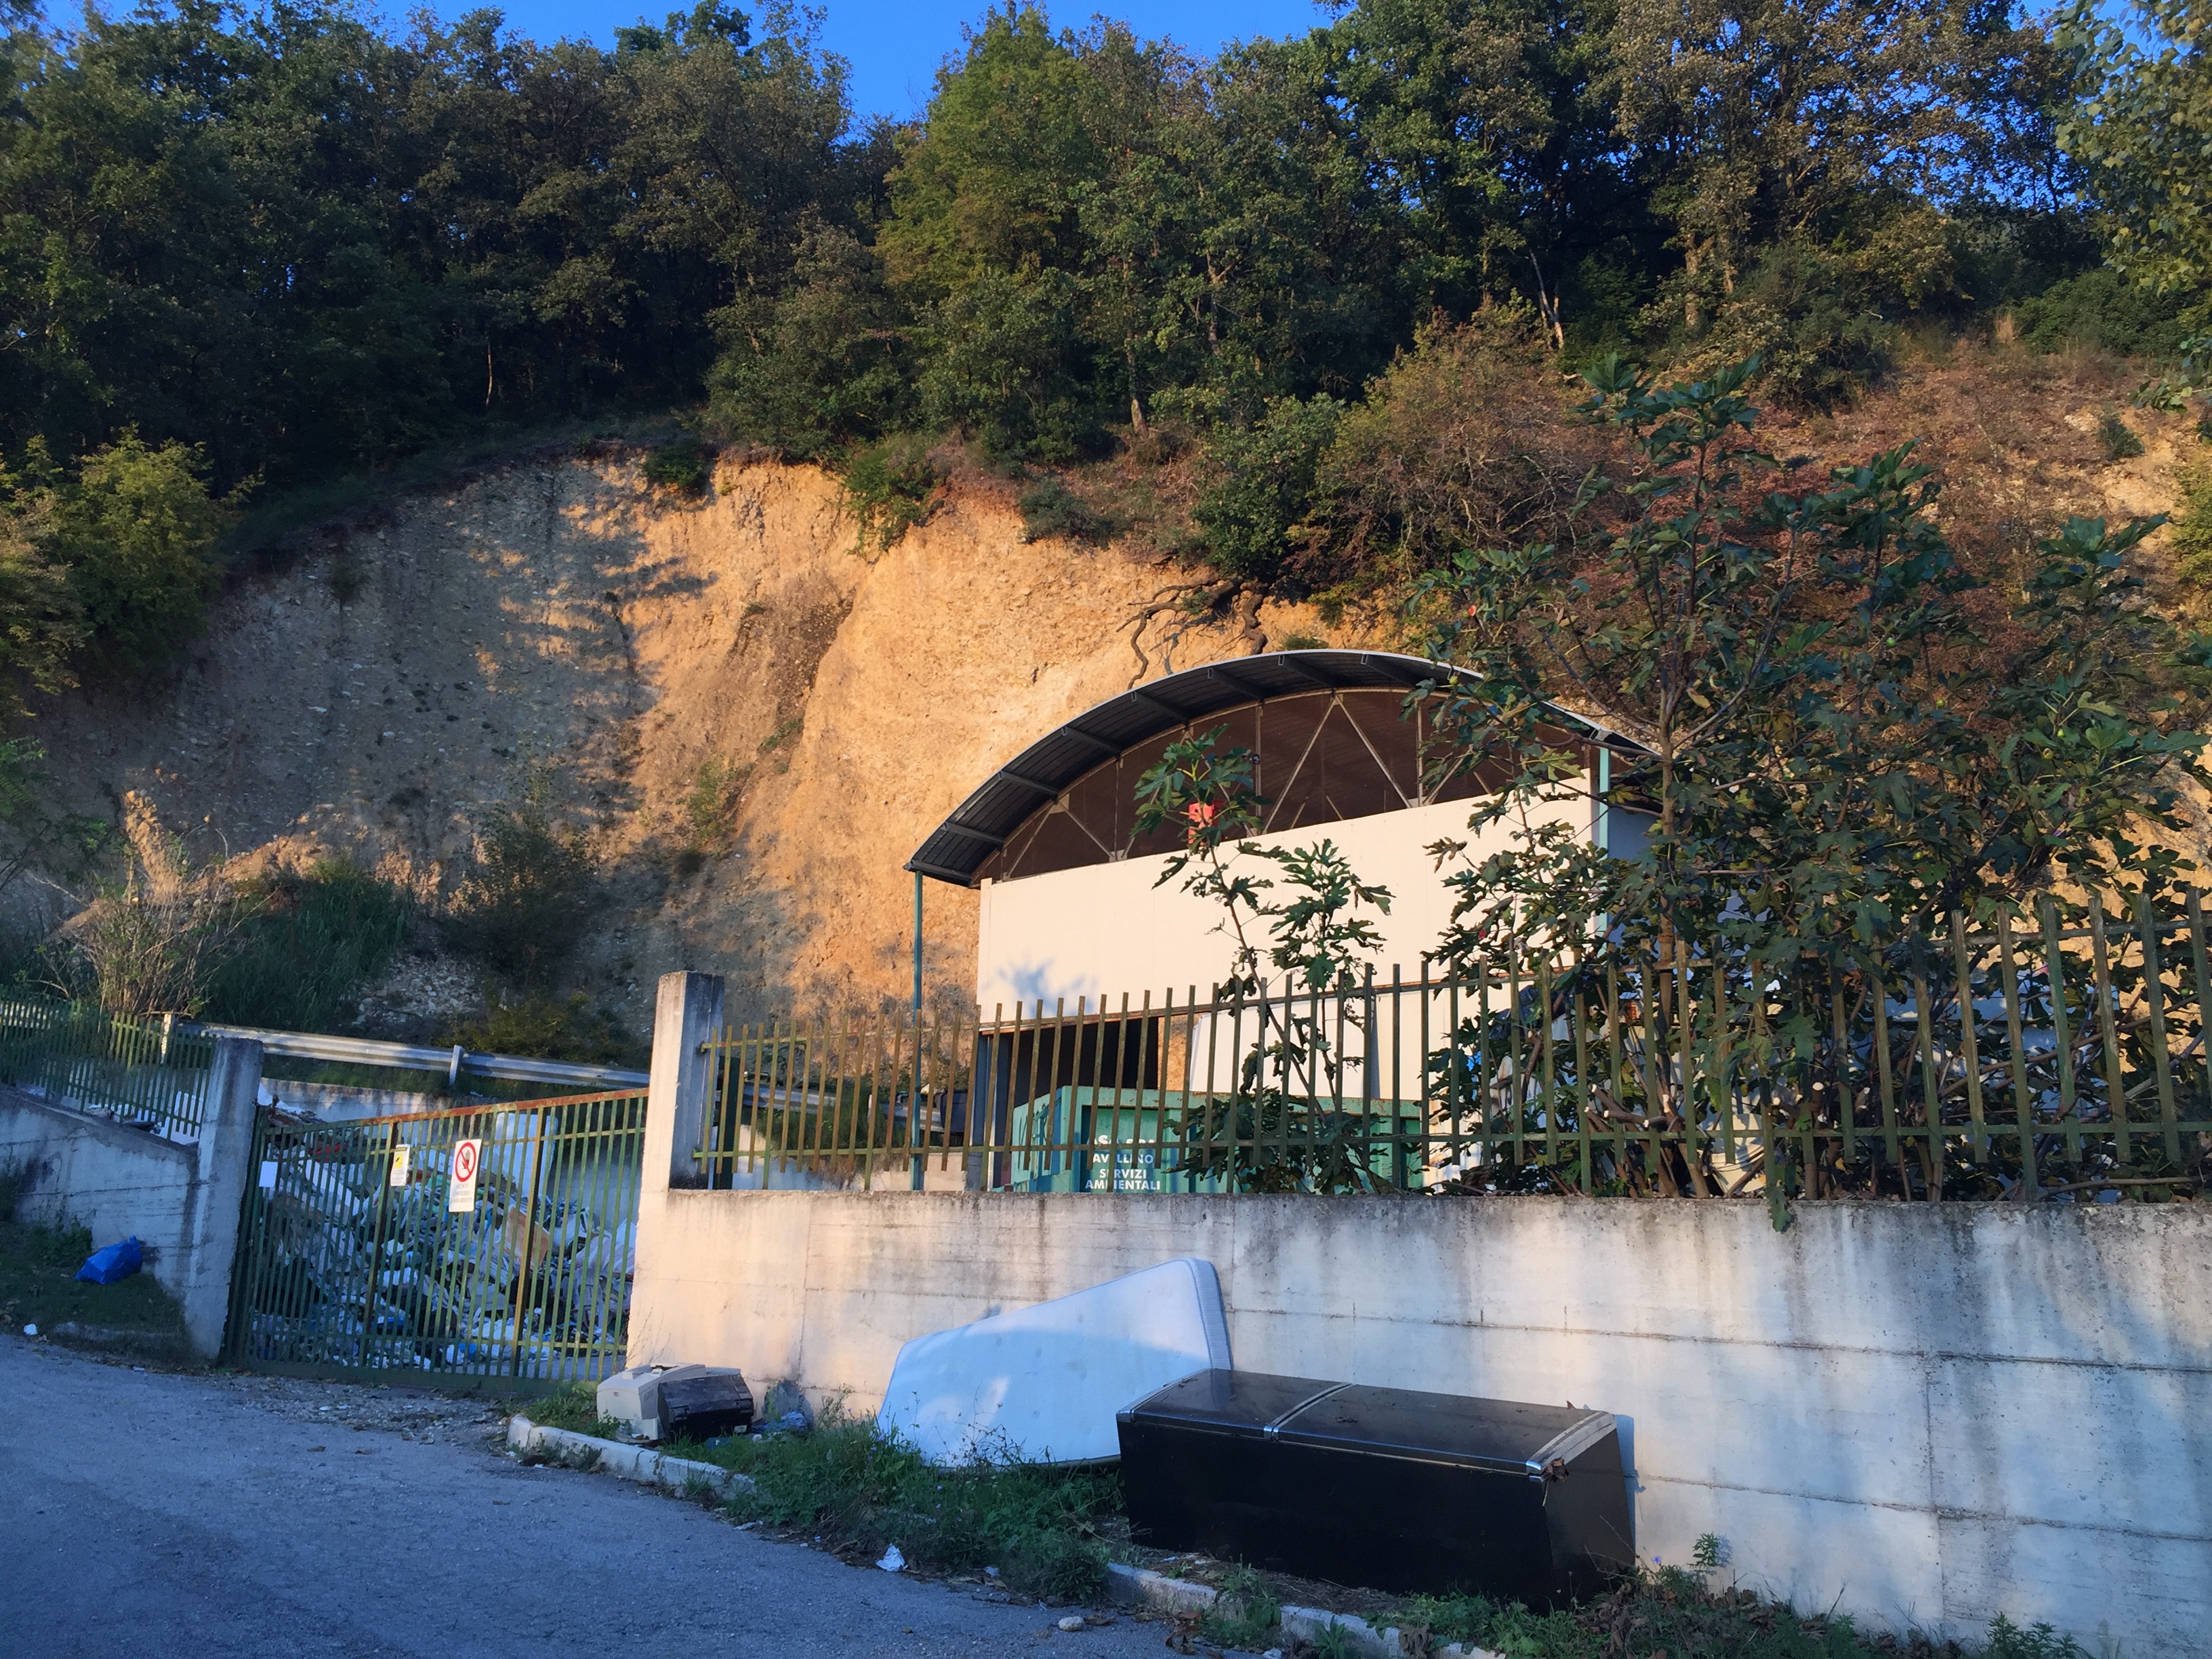 I Carabinieri Forestali di Avellino sequestrano due discariche: a Chianche e Petruro Irpino